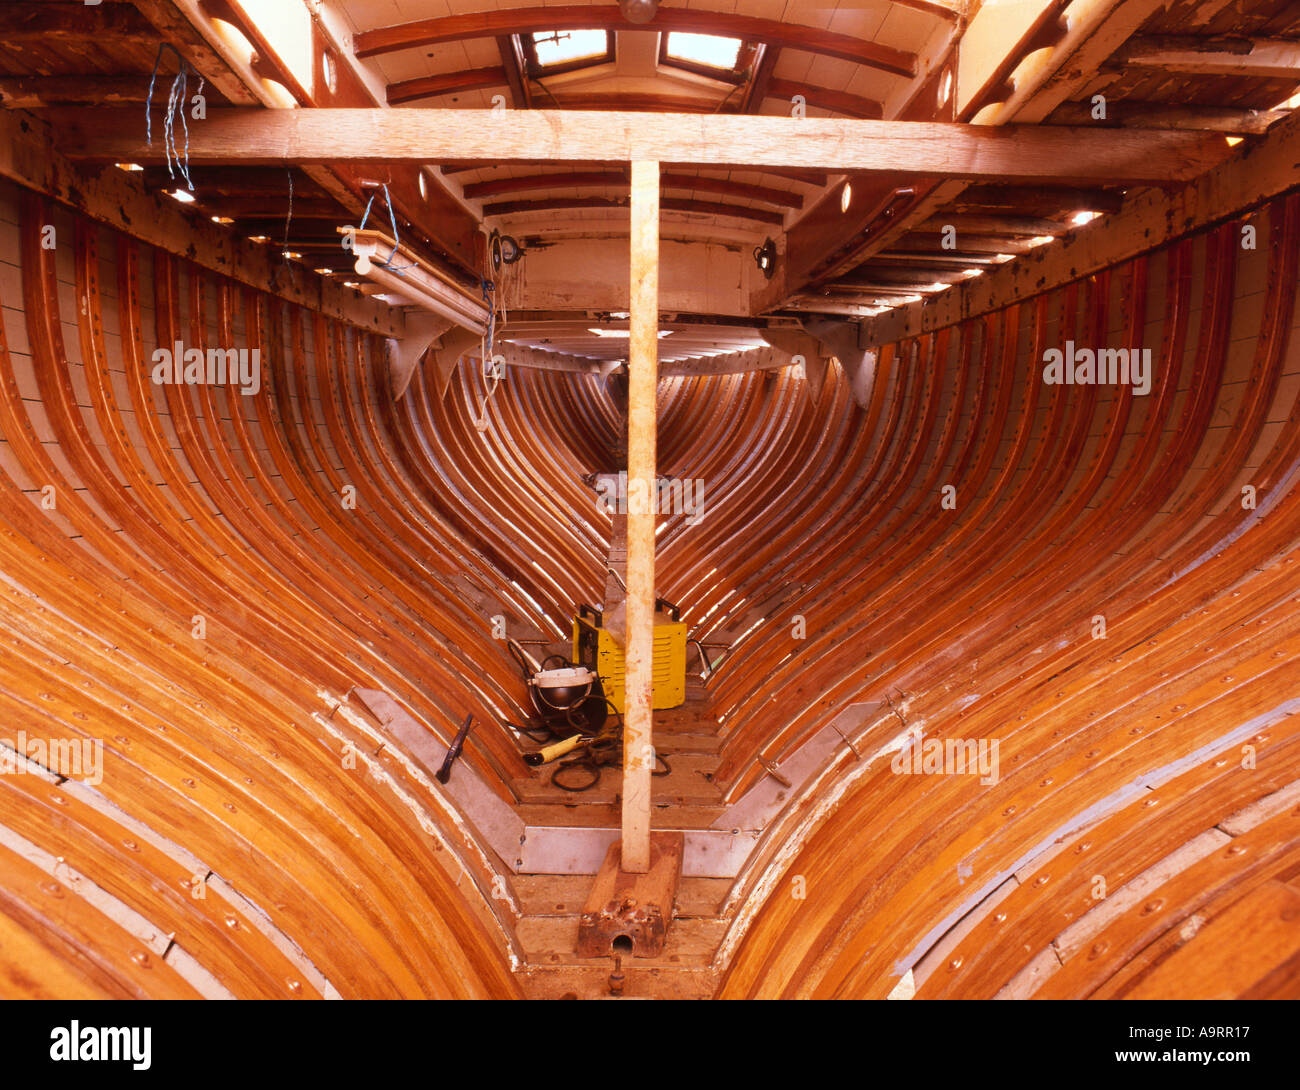 Restoring interior of wooden boat Elvira Stock Photo